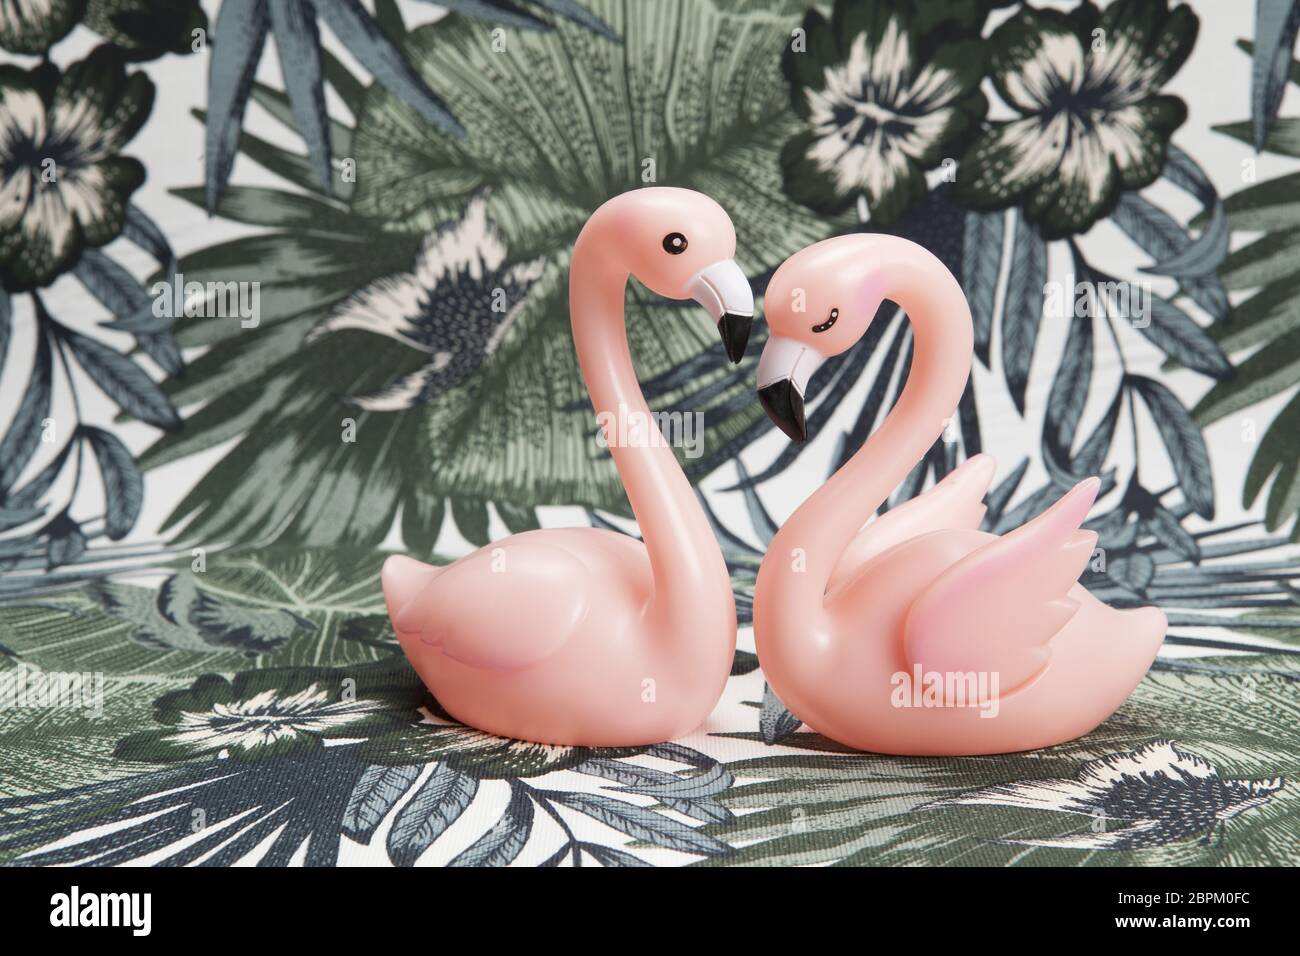 Un paio di plastica rosa fenicottero rosa su uno sfondo tropicale. Il minimo di still life fotografia a colori. Foto Stock